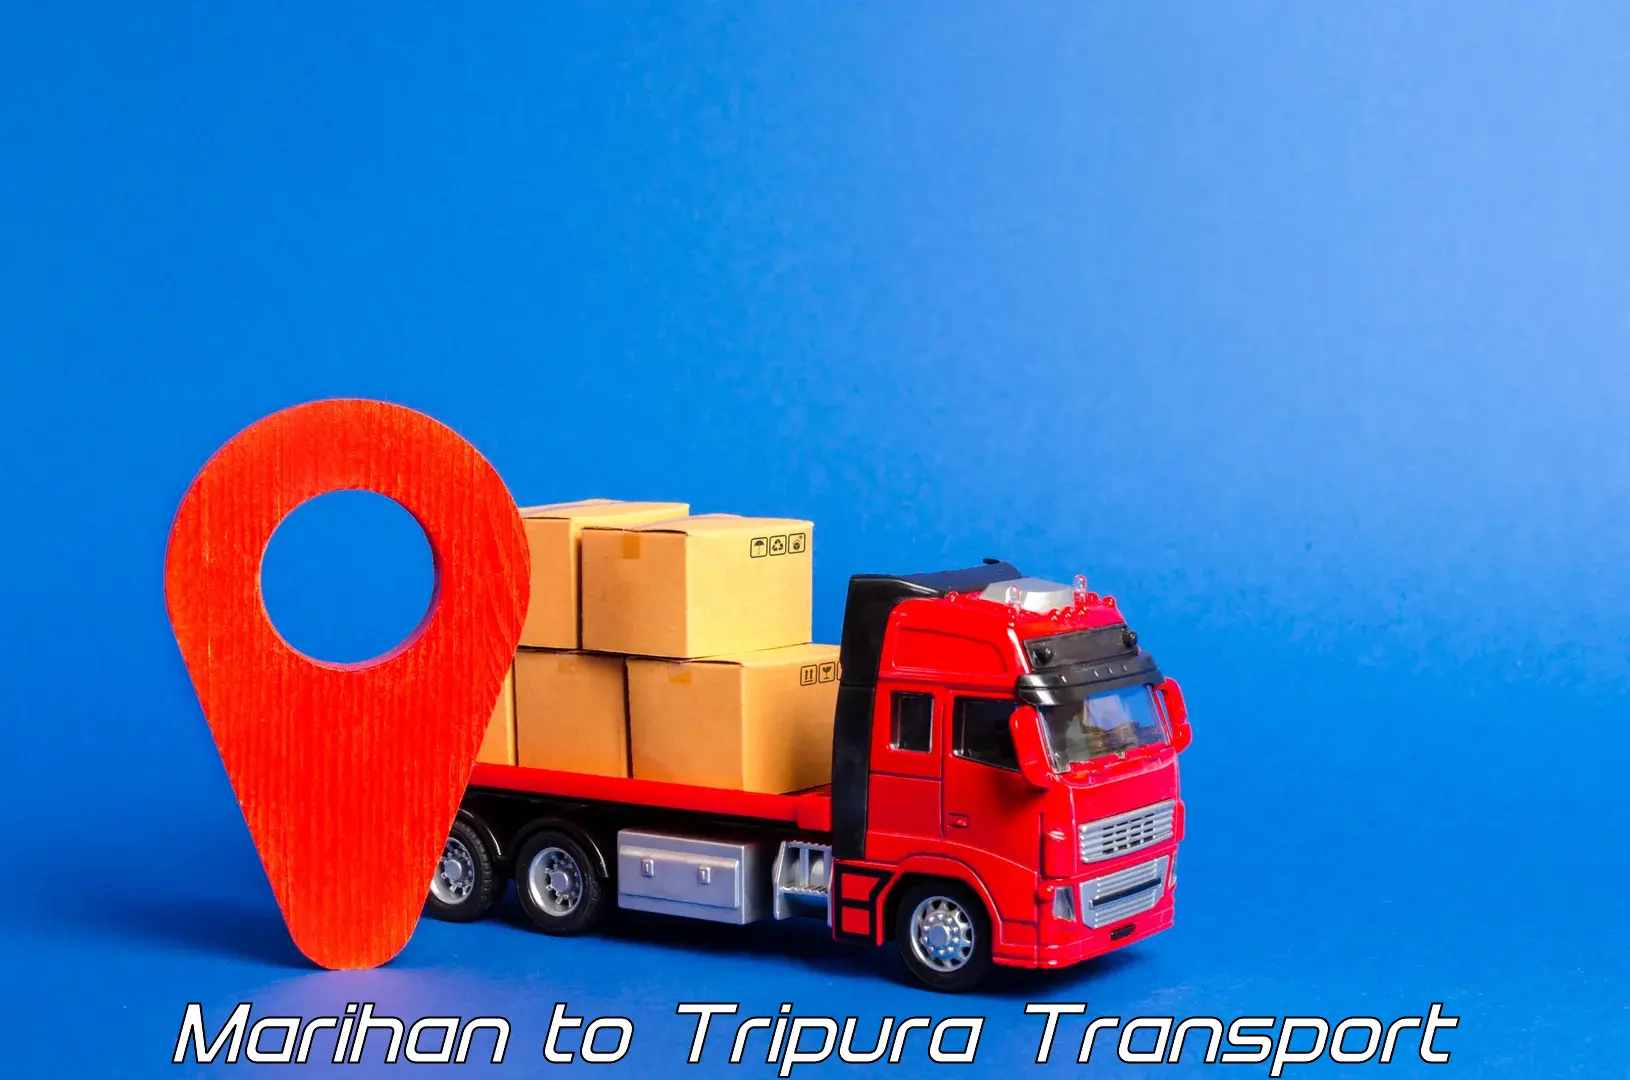 Transportation solution services Marihan to Tripura